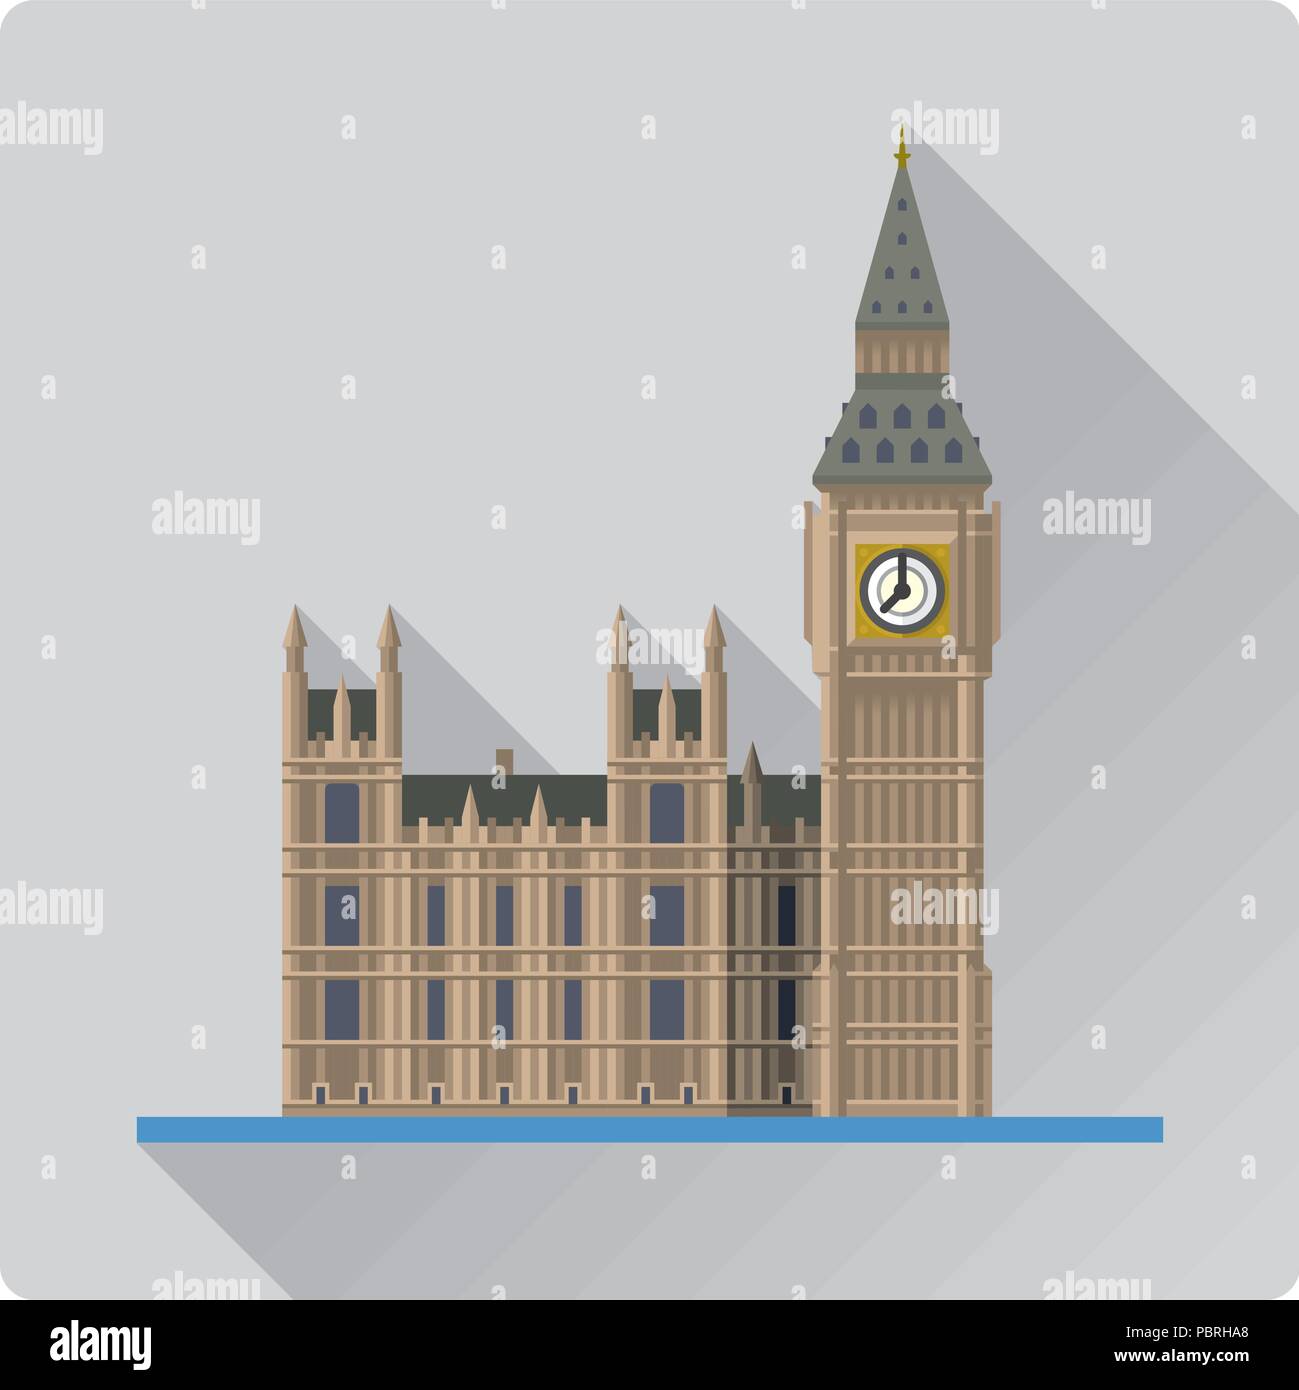 Modèle plat long shadow vector illustration de Big Ben, le Palais de Westminster à Elizabeth Tower, London, England Illustration de Vecteur